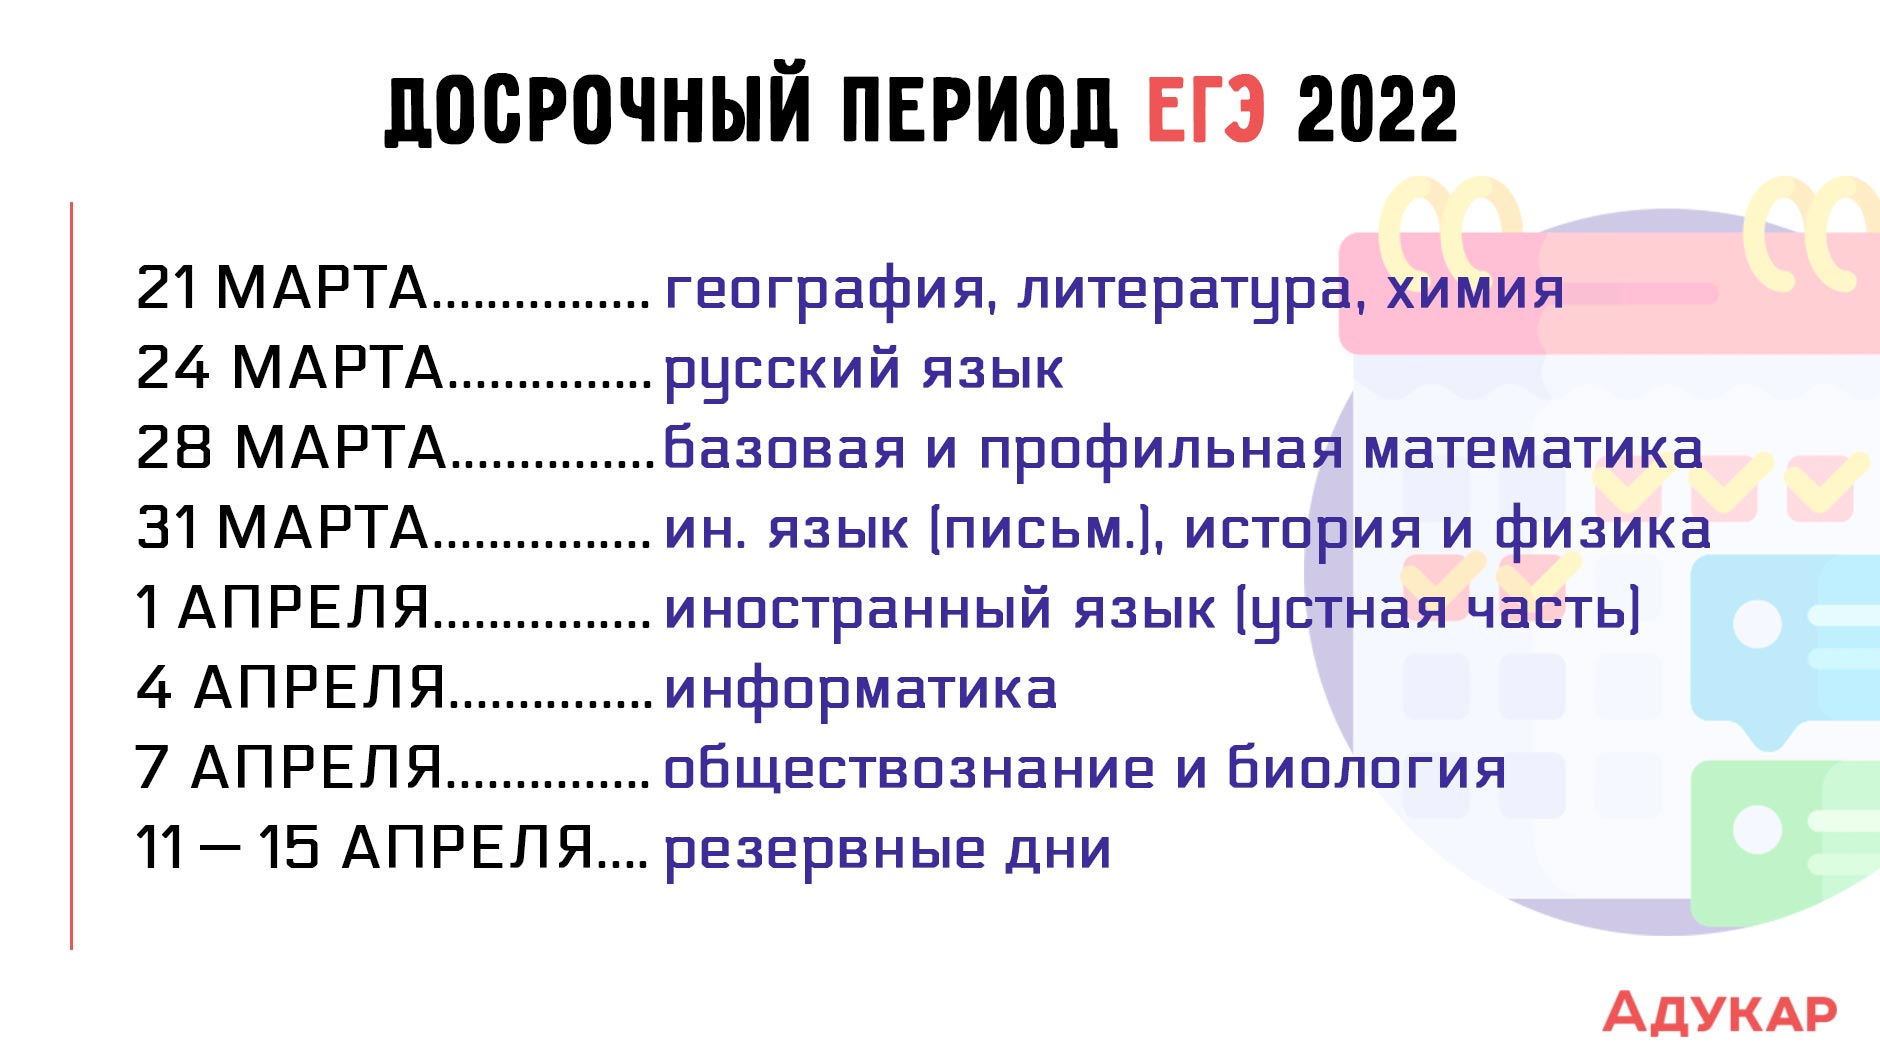 Официальные даты проведения егэ 2024. Даты проведения ЕГЭ 2022. Досрочный период ЕГЭ. Досрочный период 2022. ЕГЭ 2022 досрочный период даты.